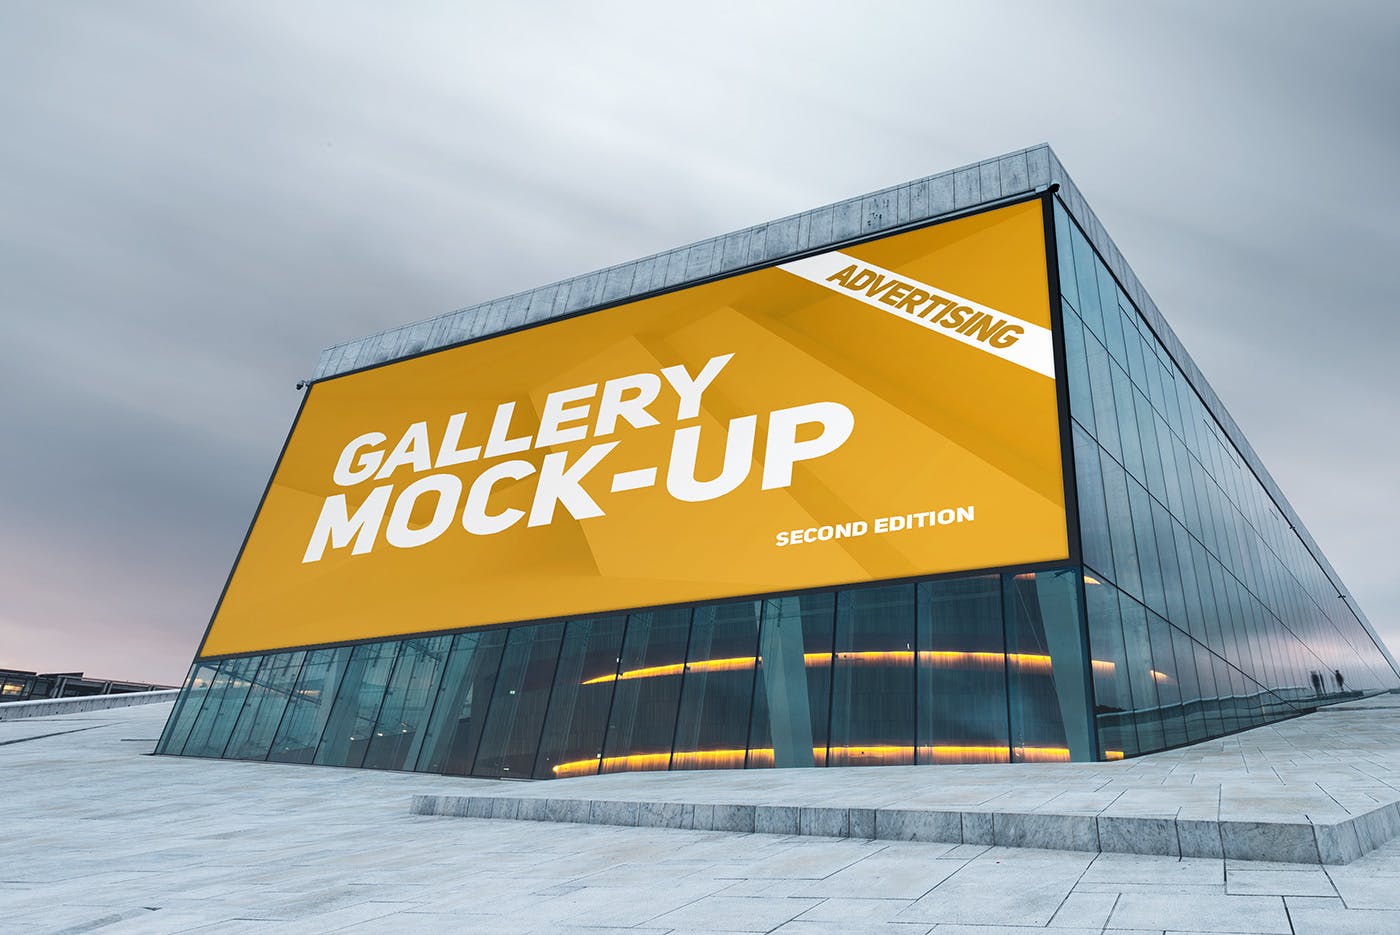 展厅画廊巨幅海报设计图样机非凡图库精选模板v3 Gallery Poster Mockup v.3插图(10)